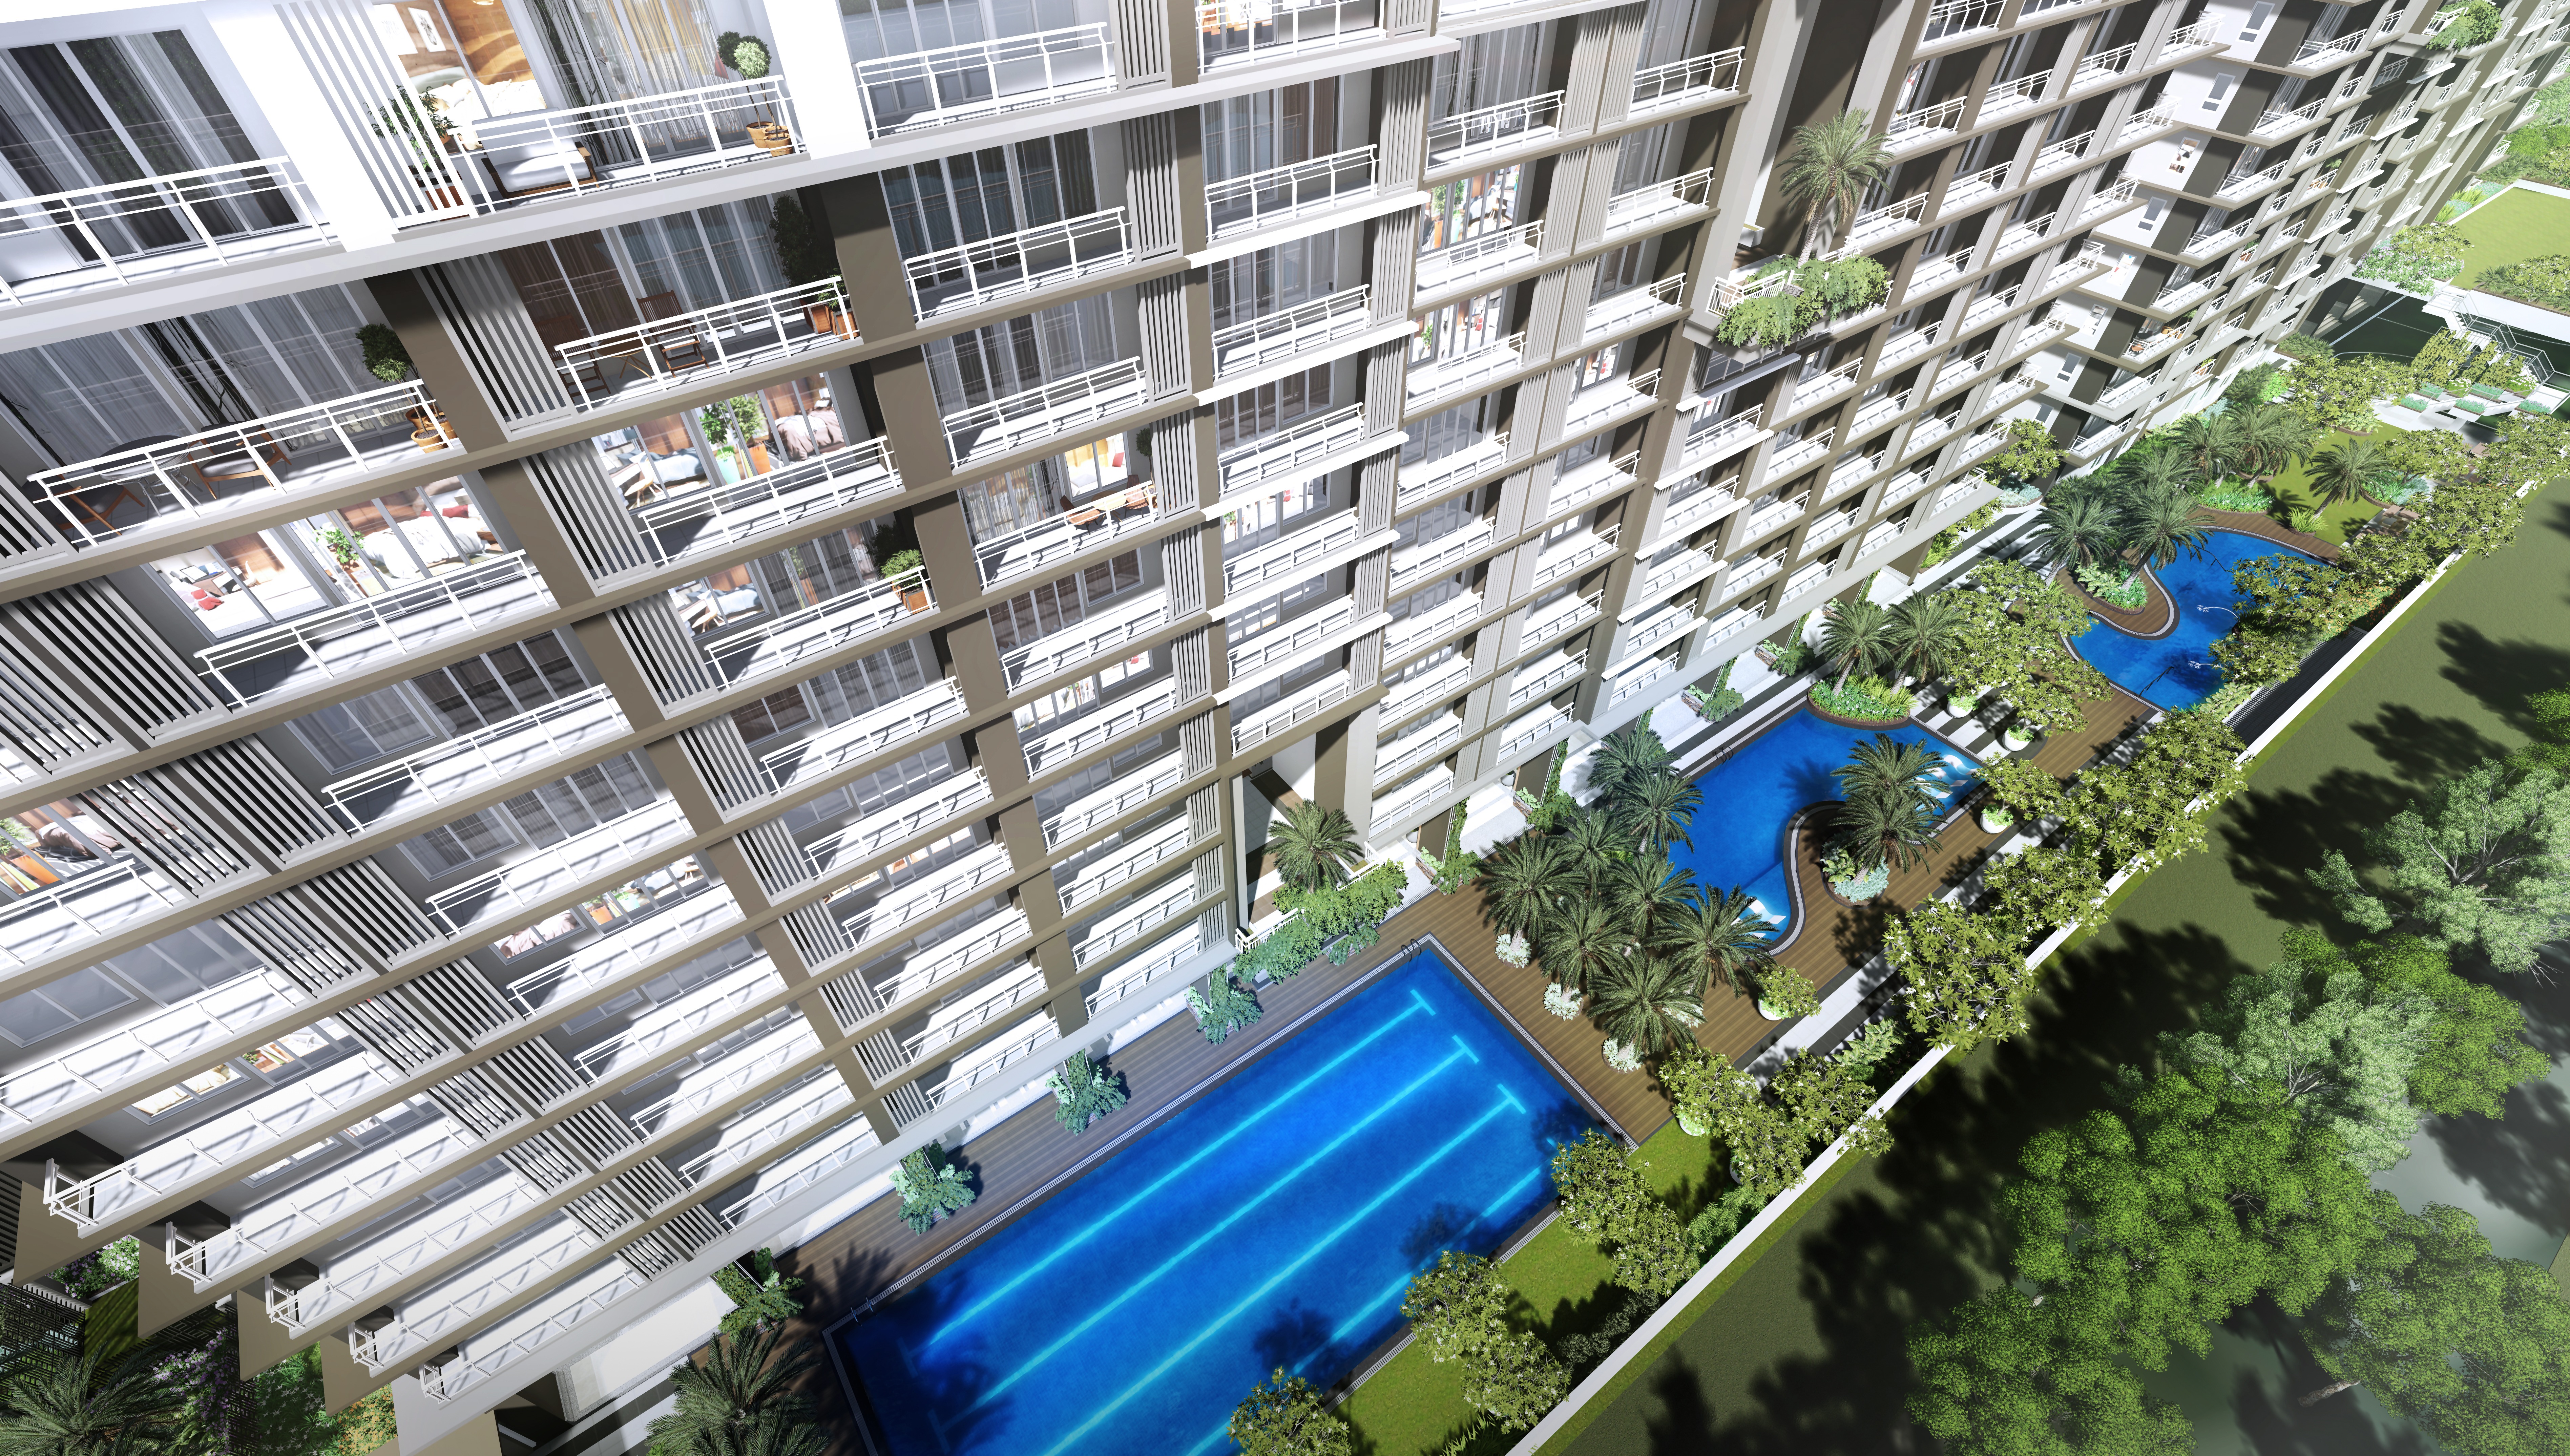 Condominium with three swimming pools